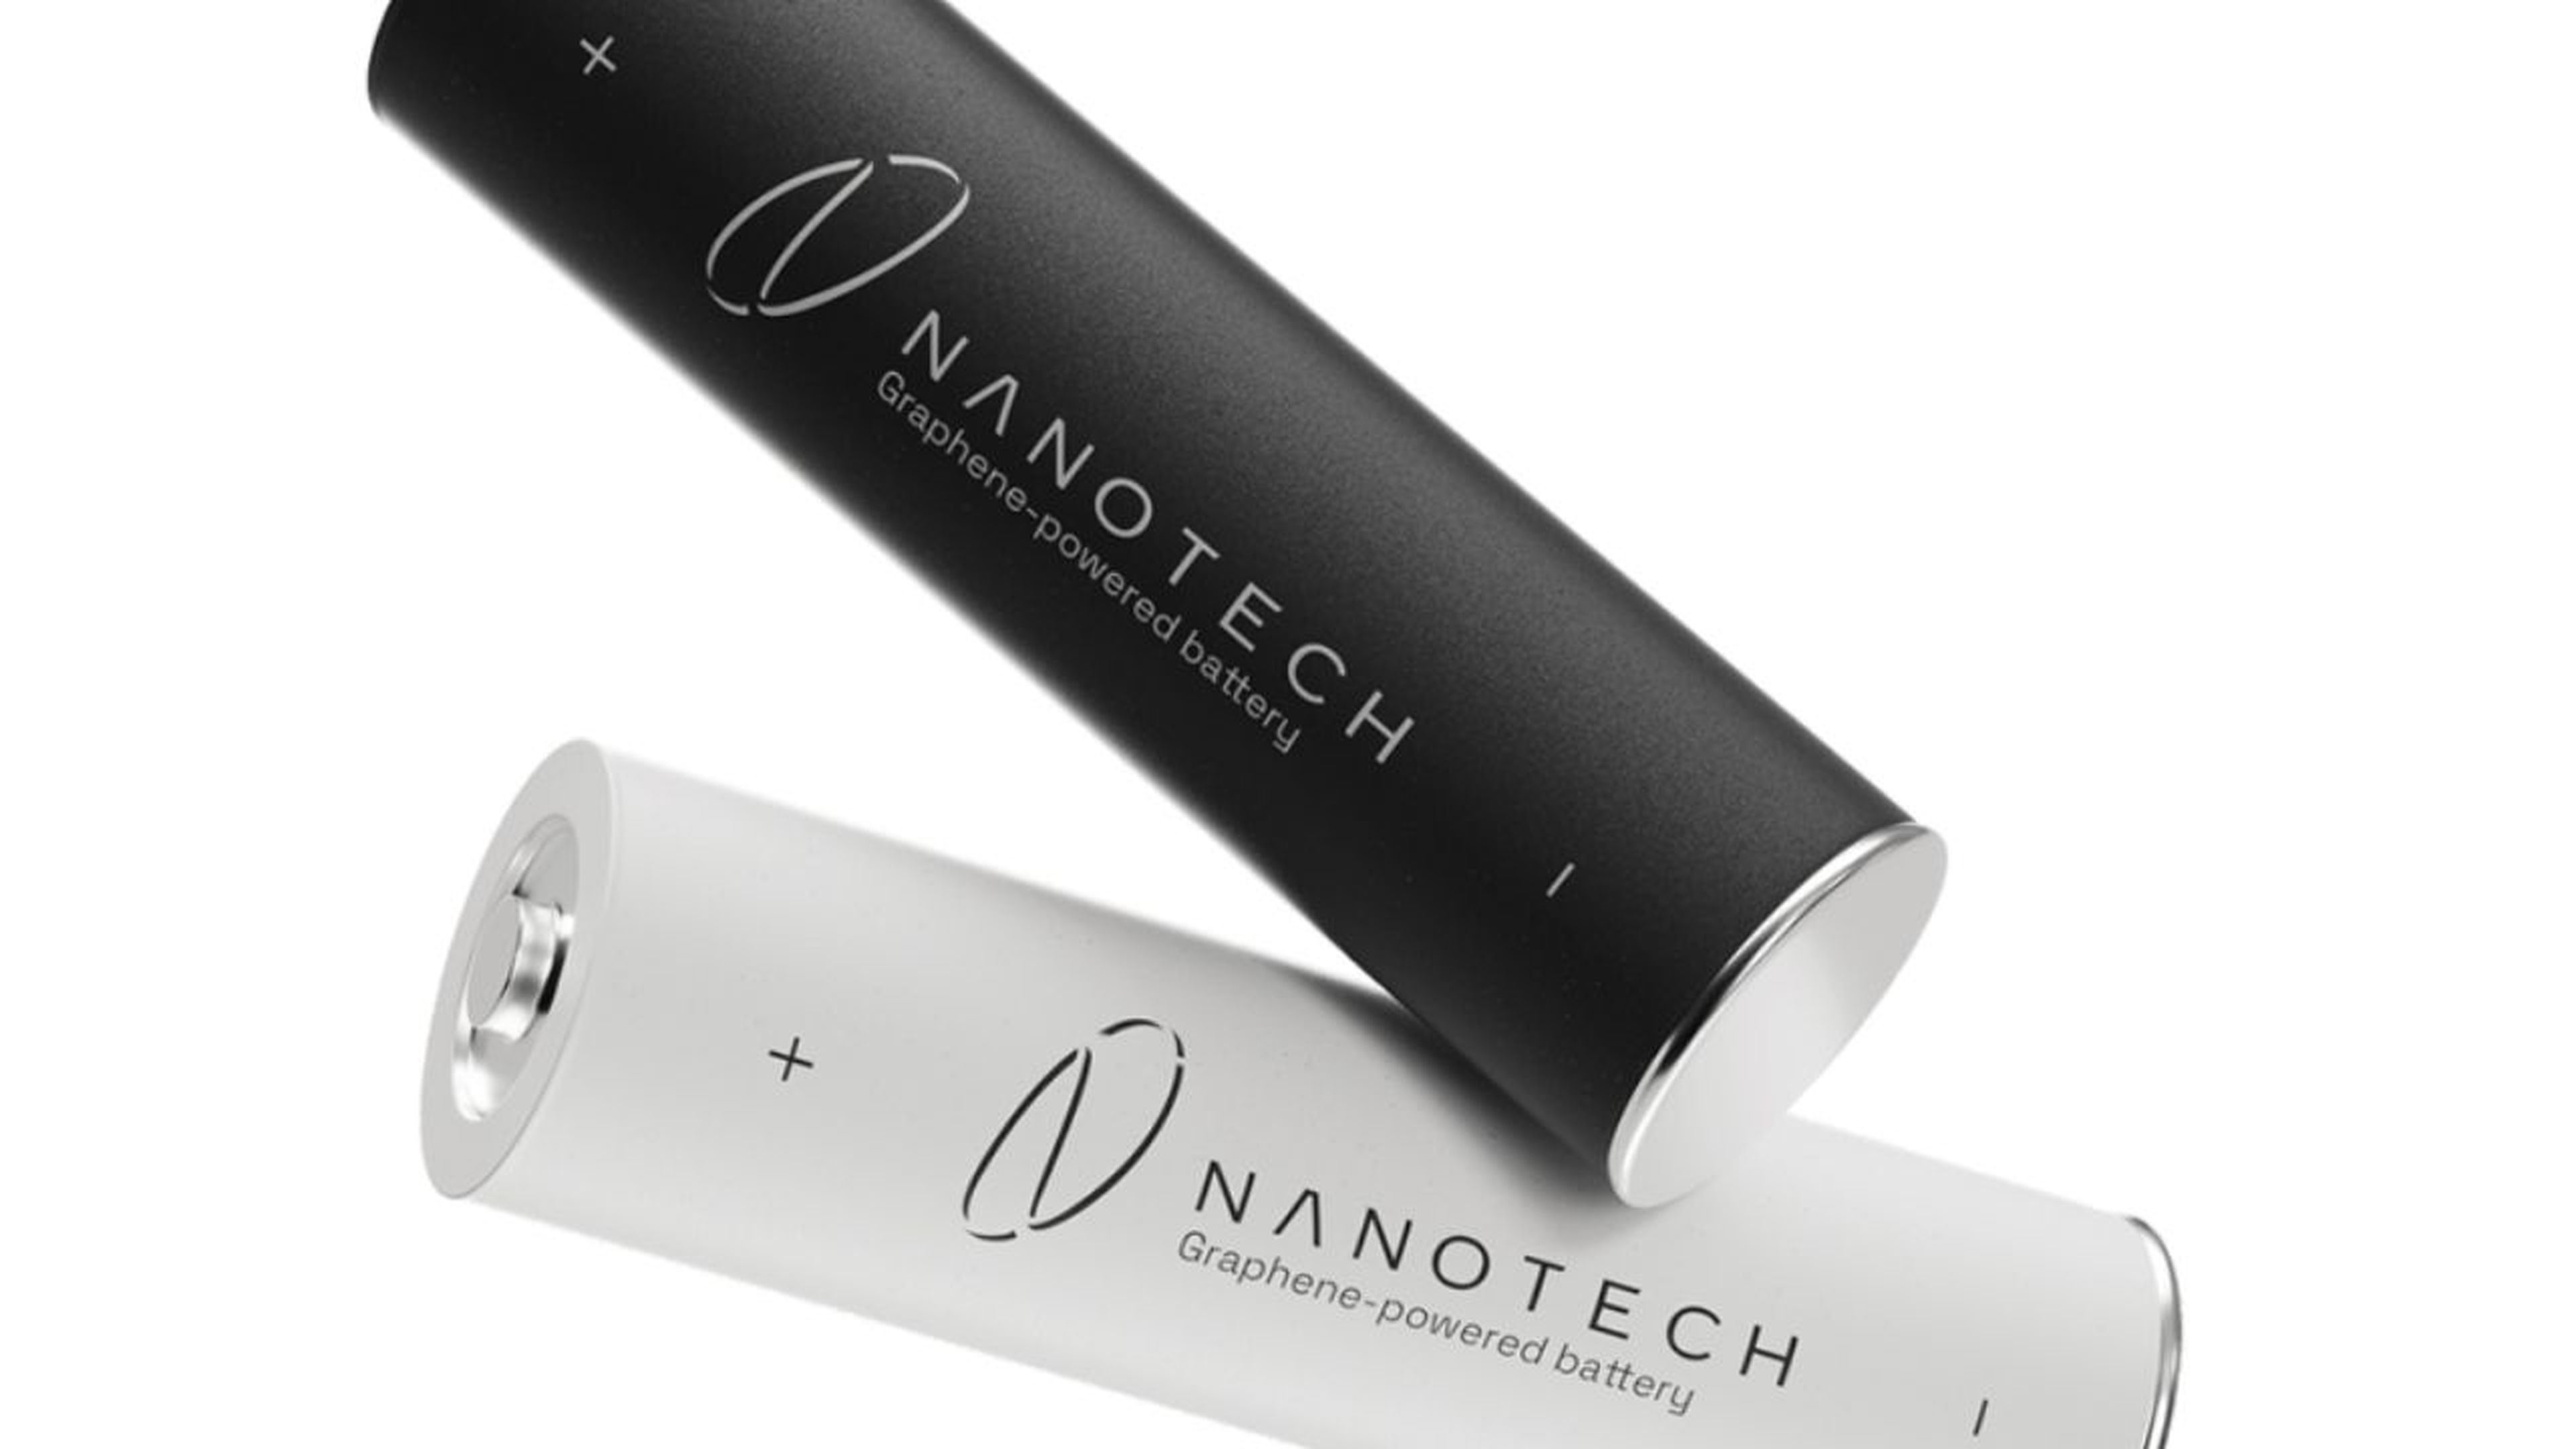 Batería Nanotech Energy